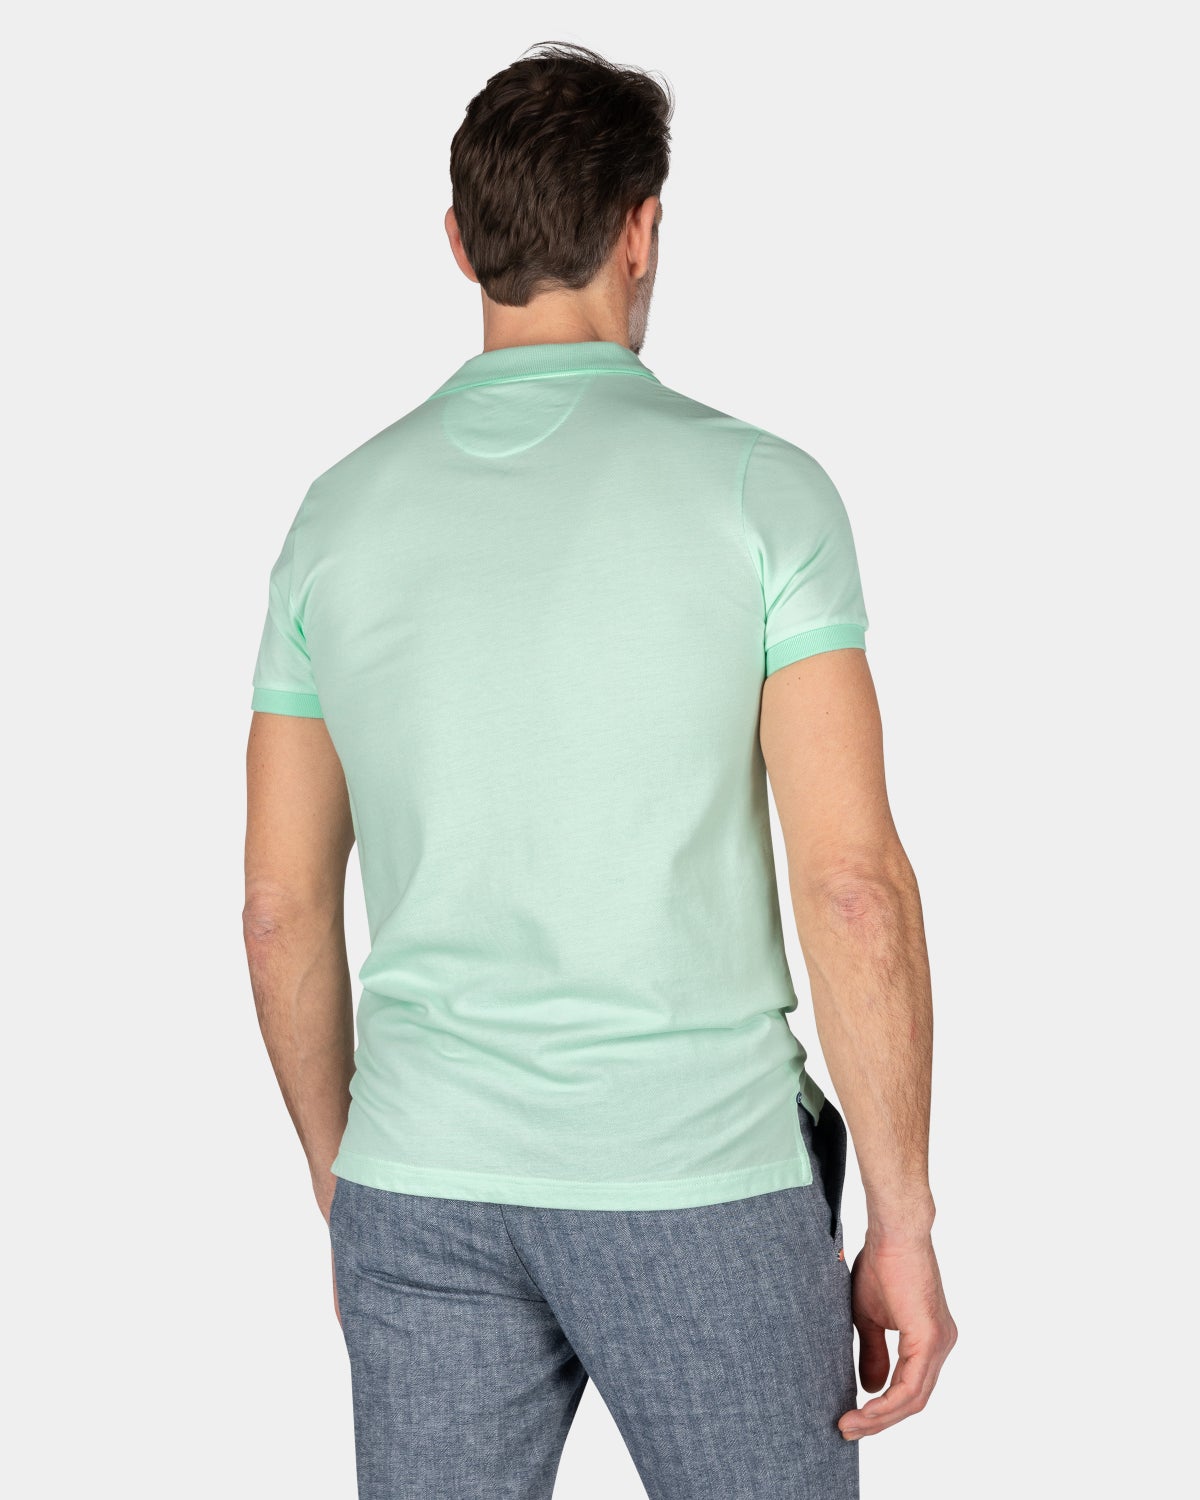 Camisa polo liso de algodón - Teal Green